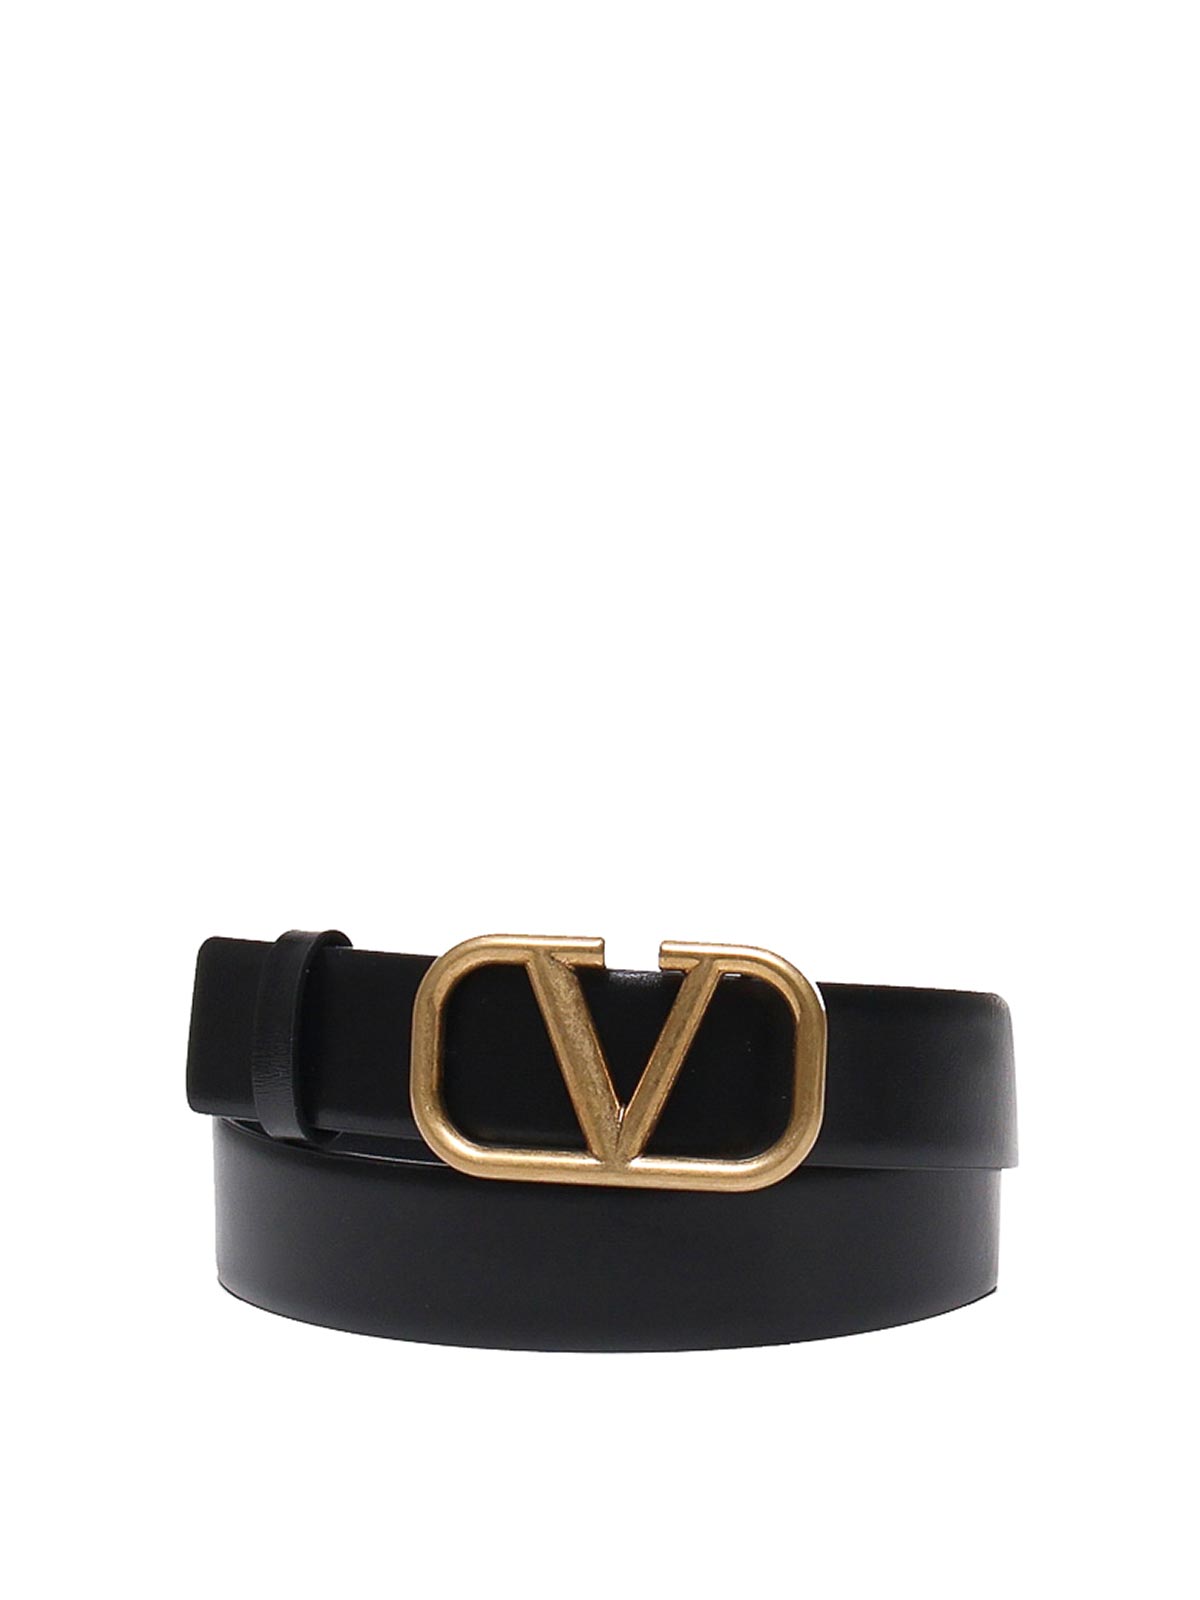 VLogo Signature 10 reversible leather belt